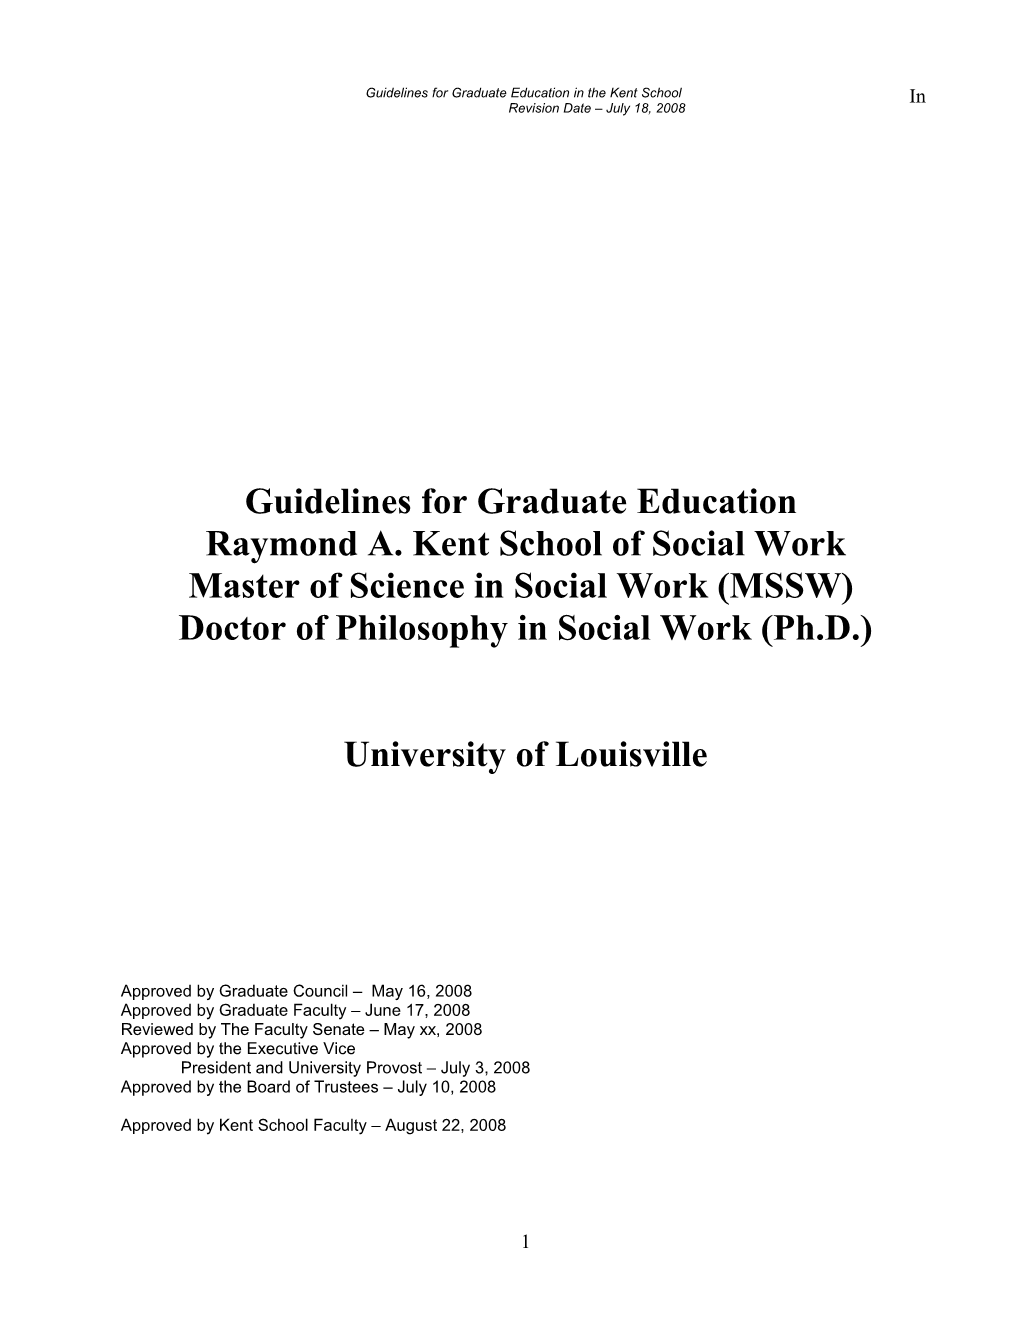 Minimum Guidelines for Graduate Education